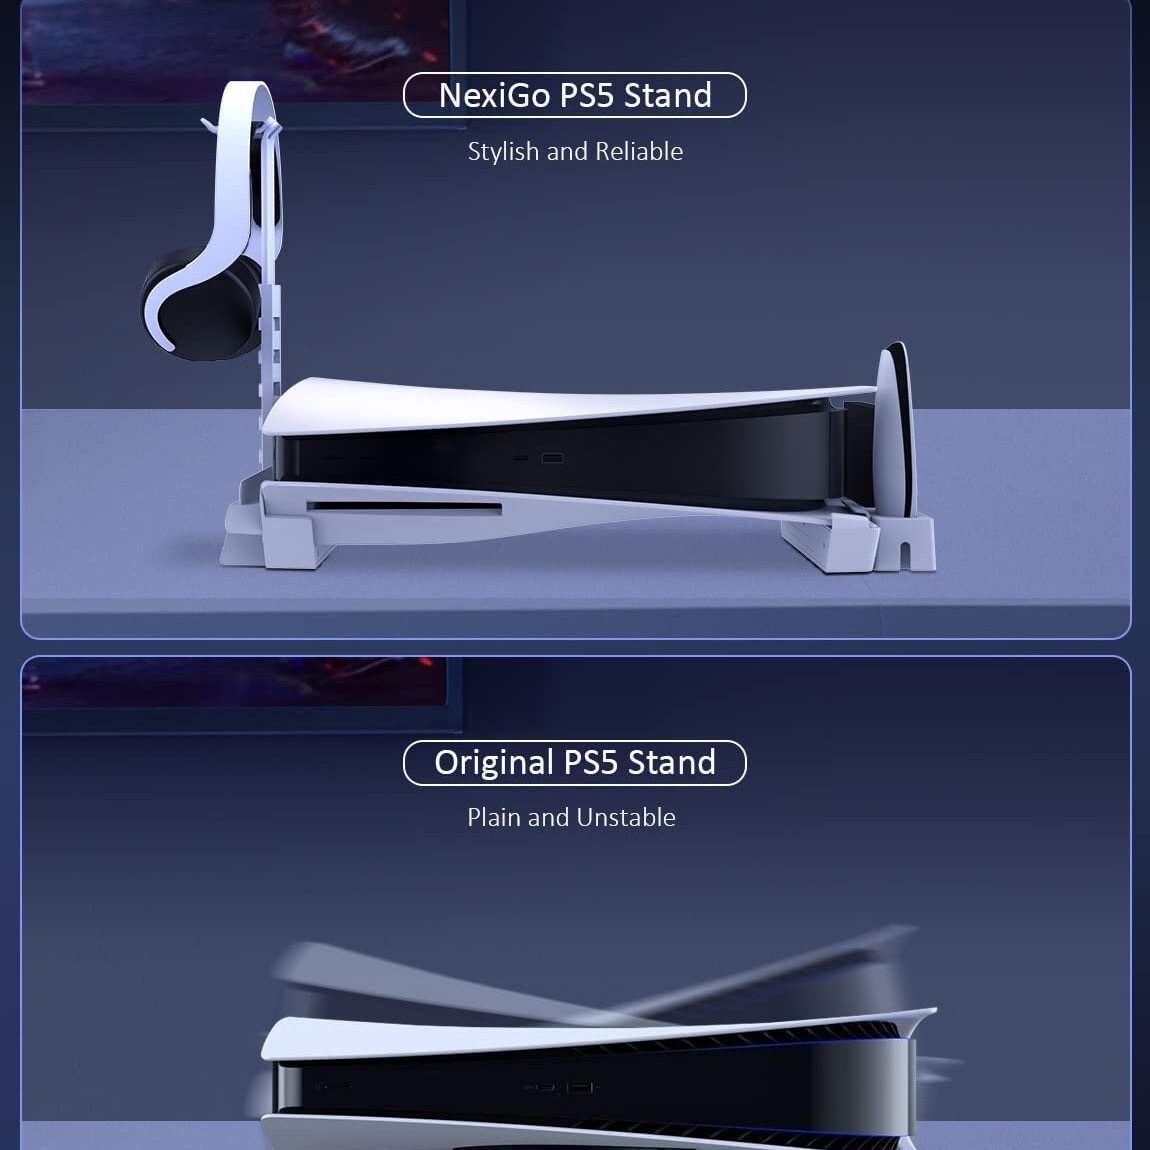 Nexigo PS5 Stand Review